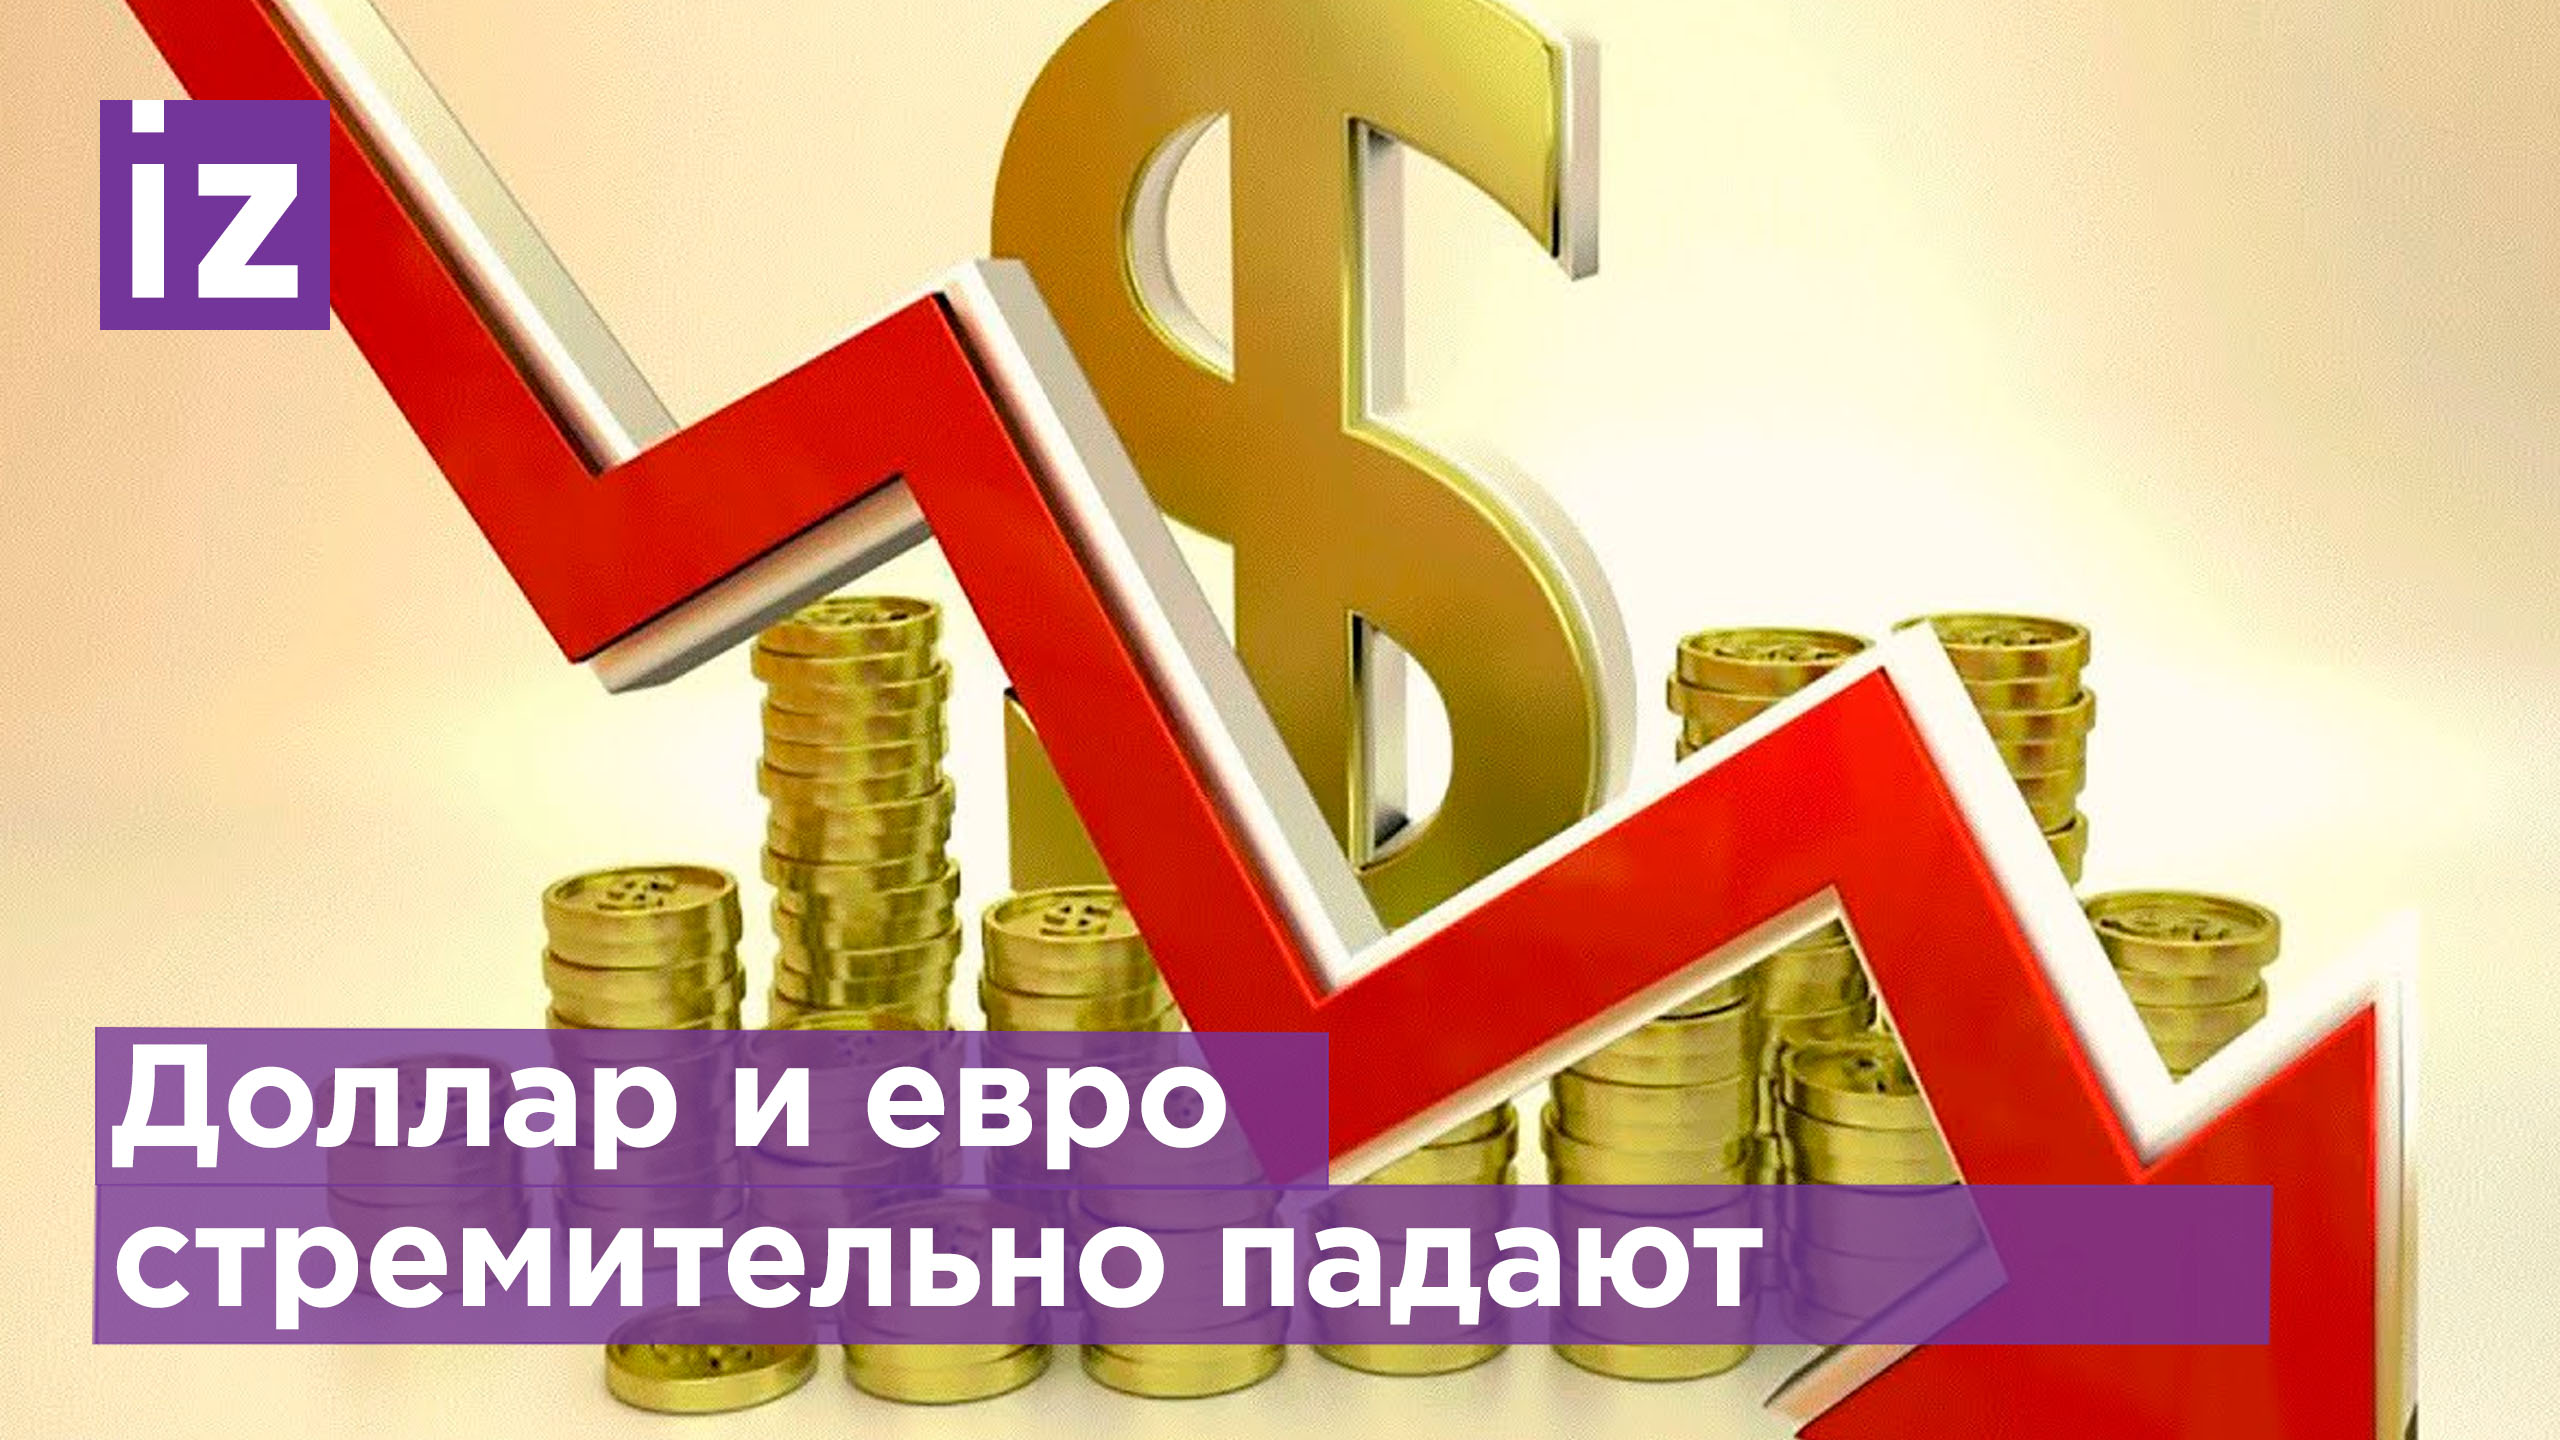 Доллар и евро стремительно падают / Известия